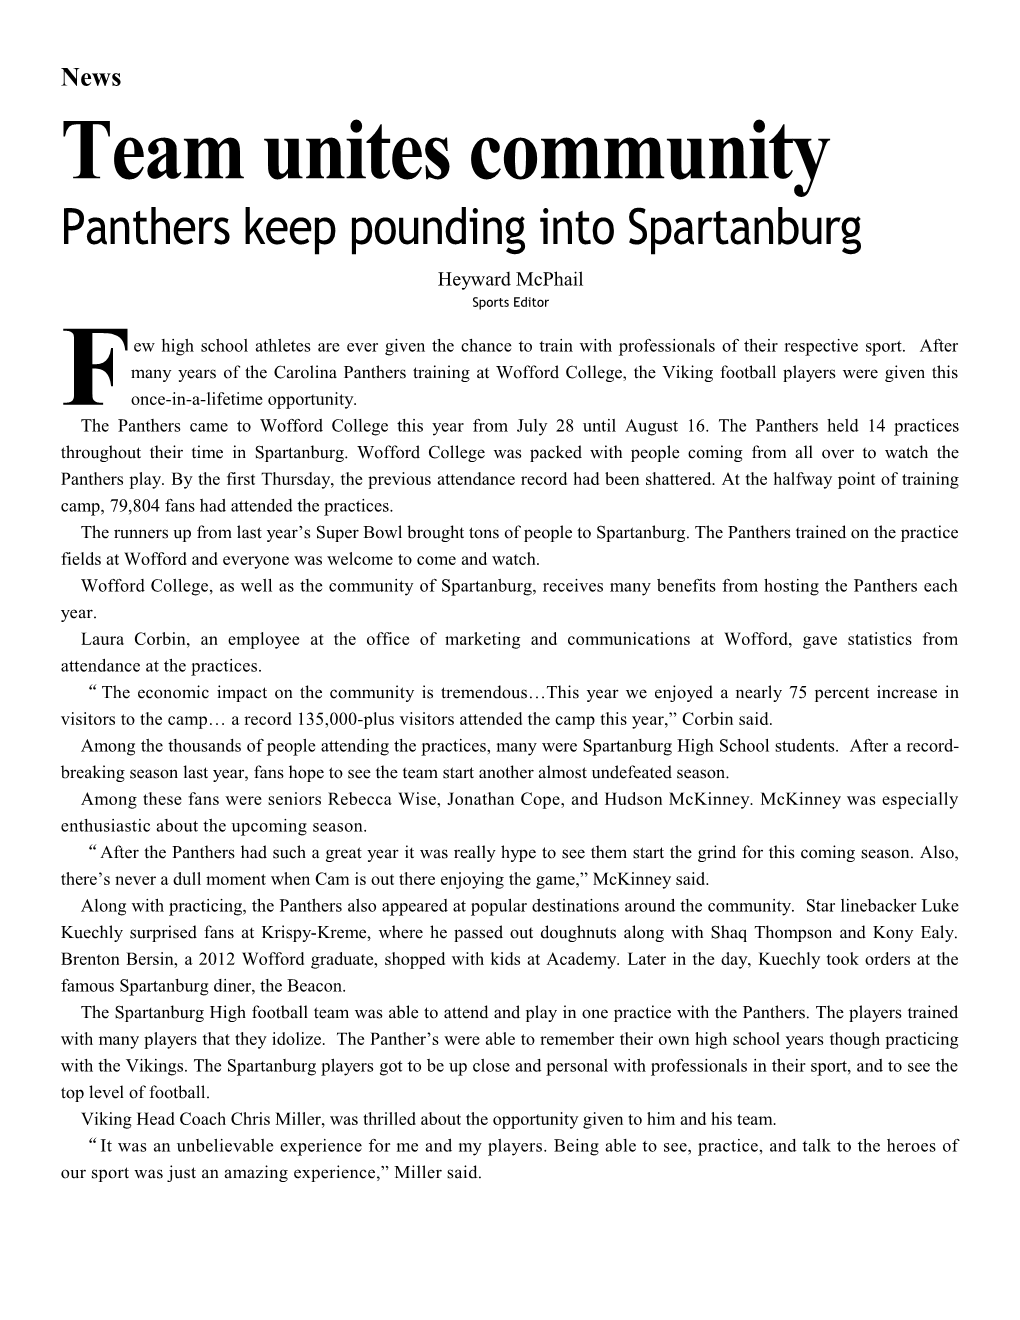 Team Unites Community